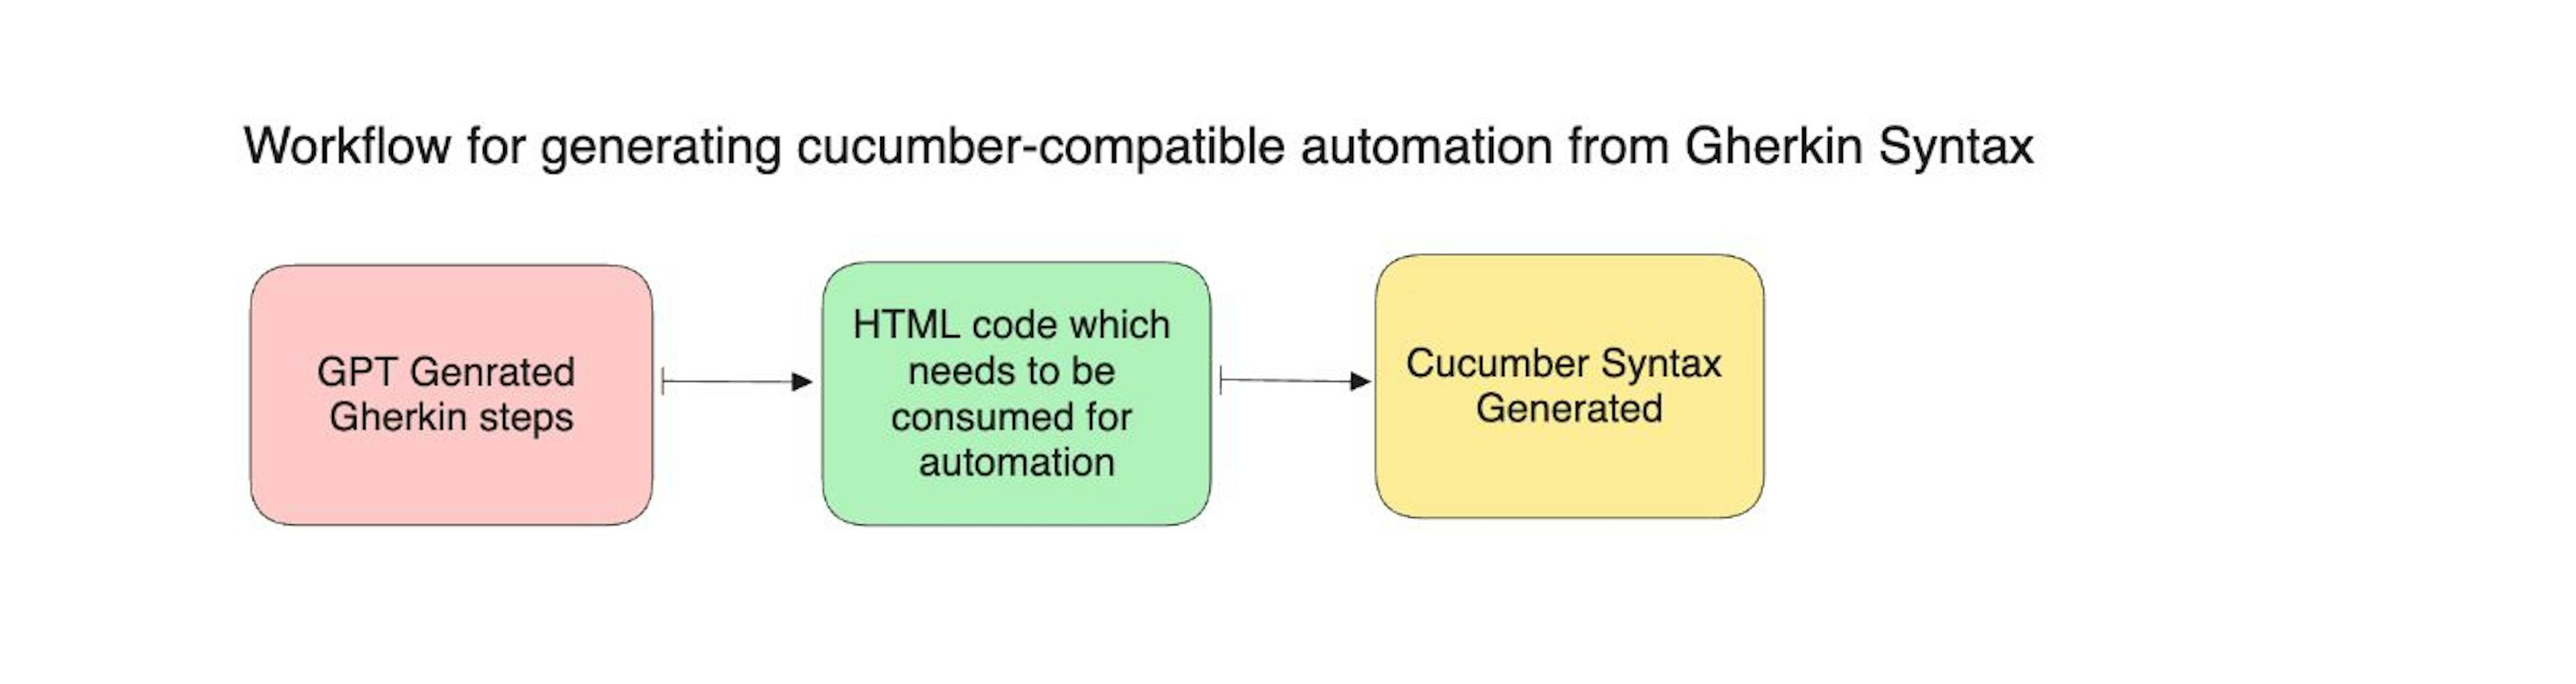 Tạo mã tương thích Cucumber với các bước Gherkin bằng GPT